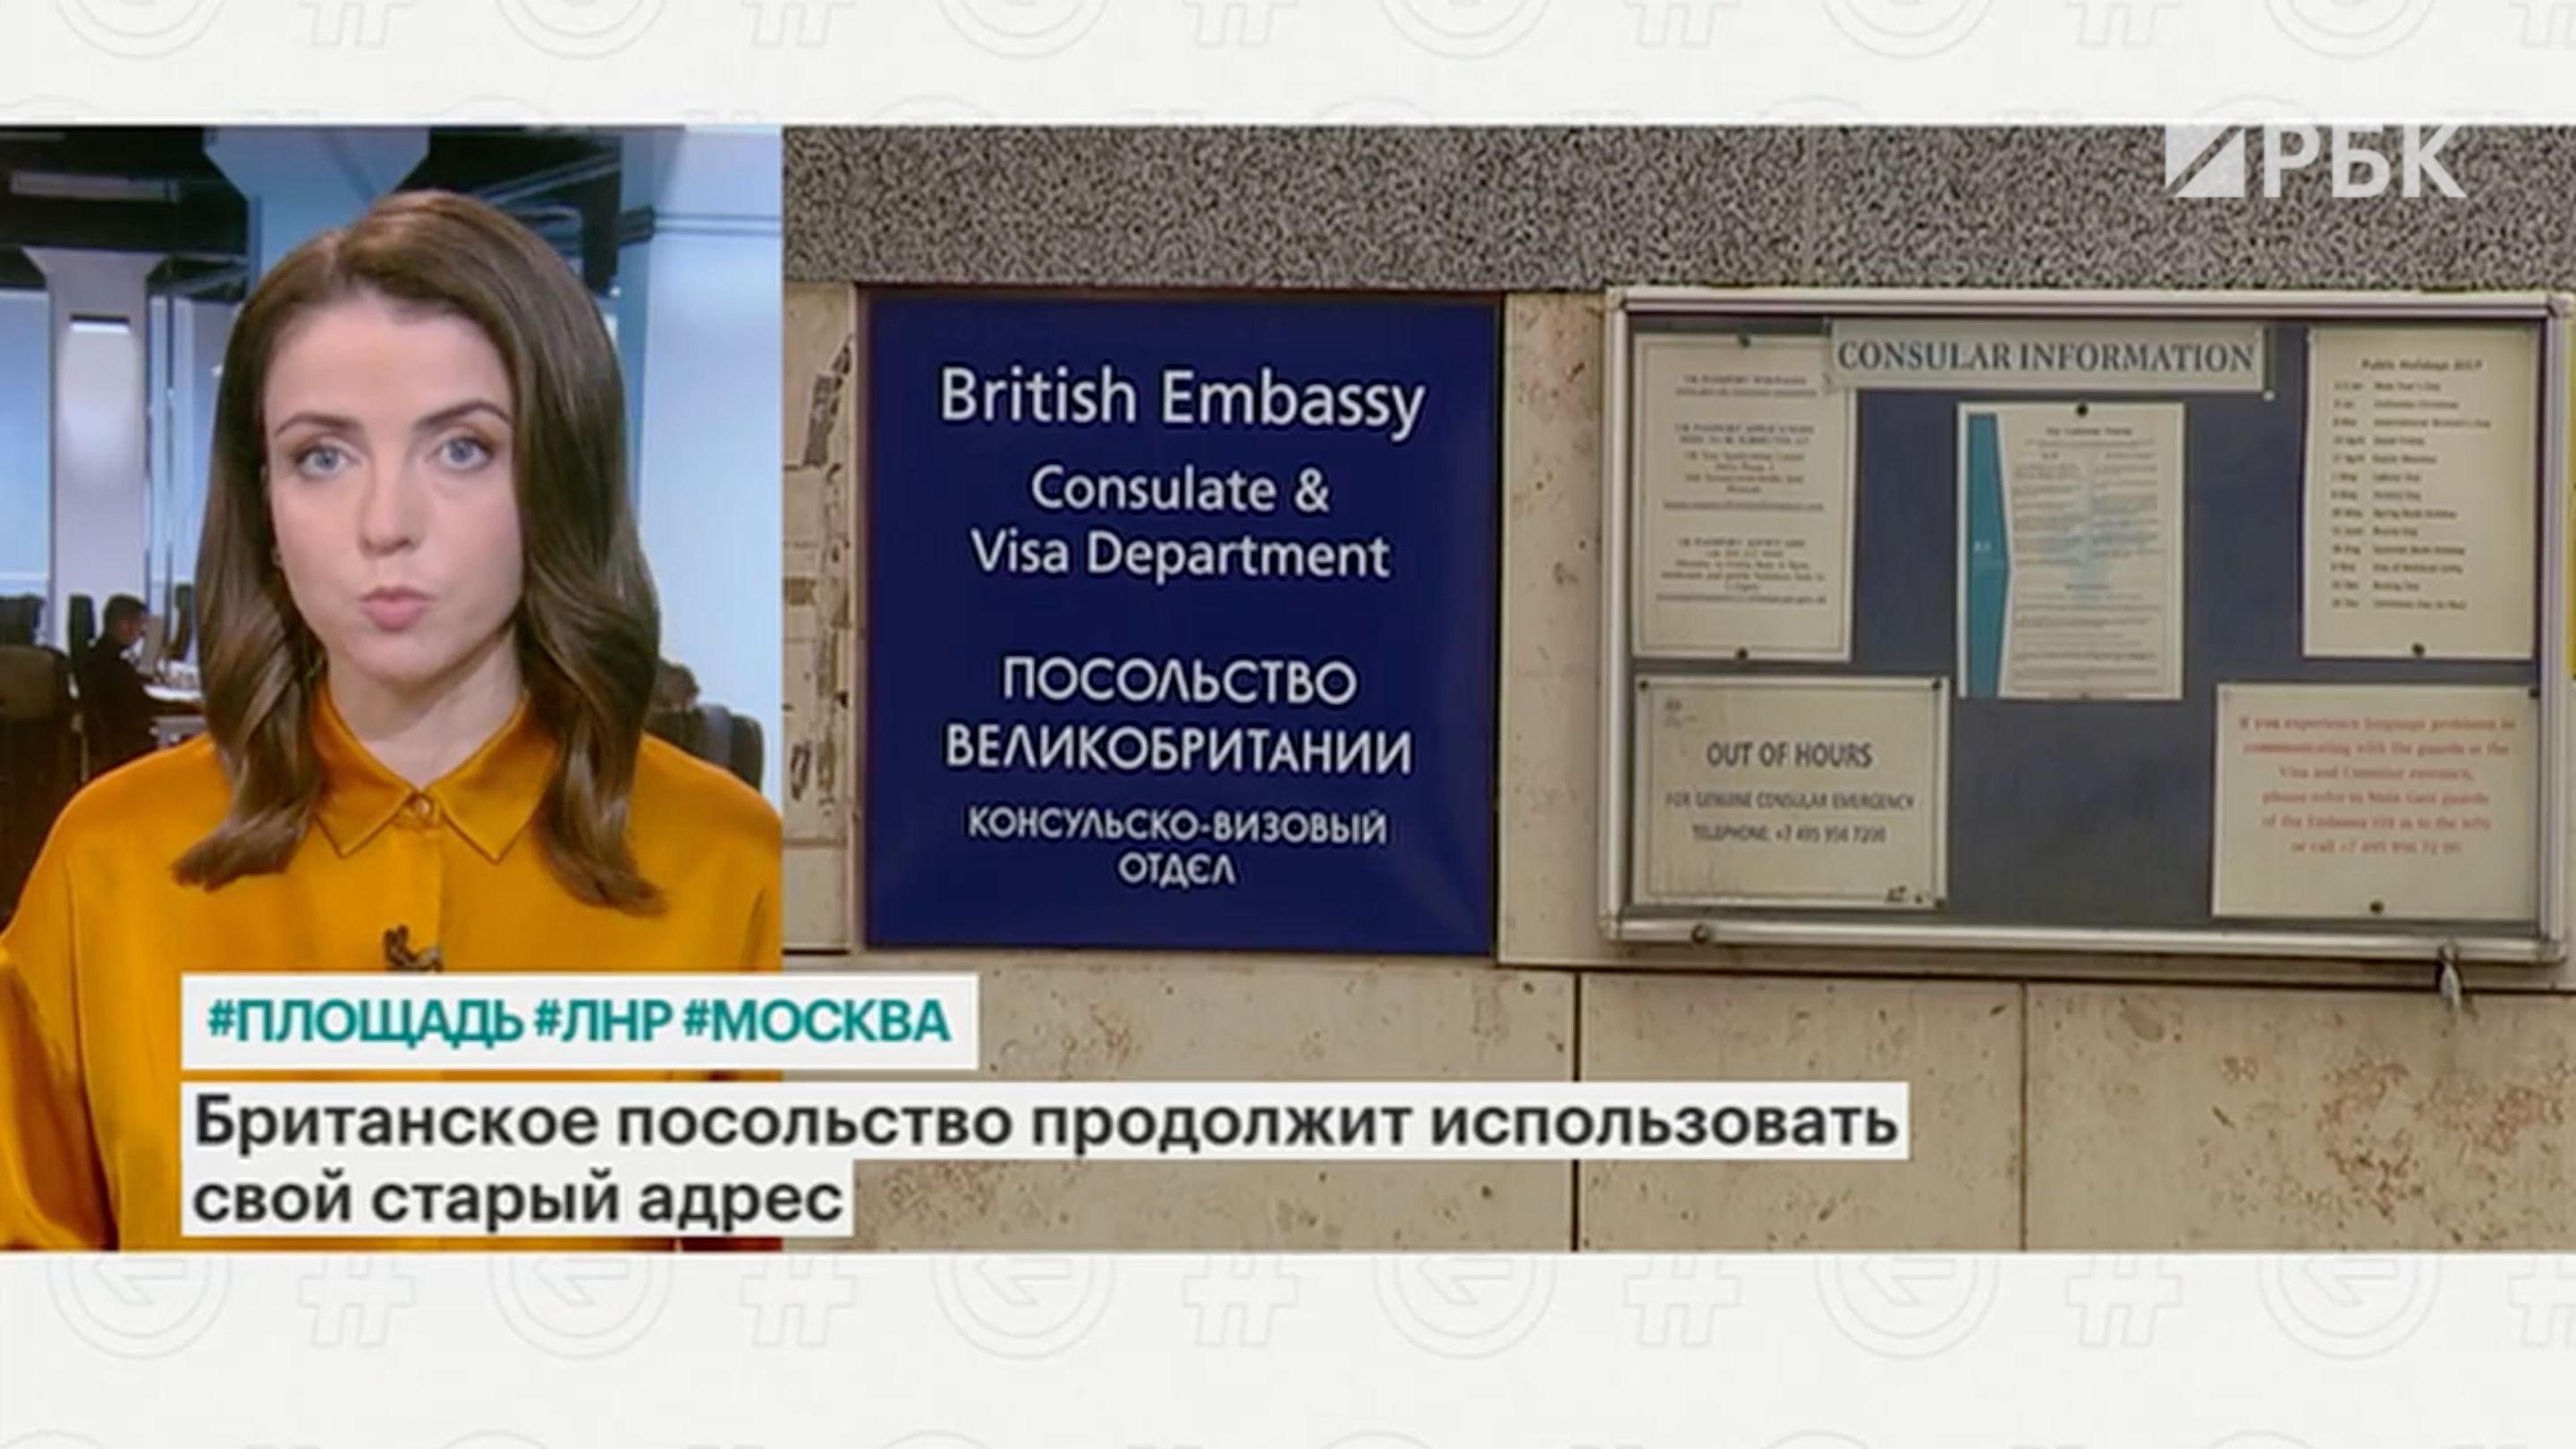 Посольство Великобритании в России не стало менять адрес на площадь ЛНР